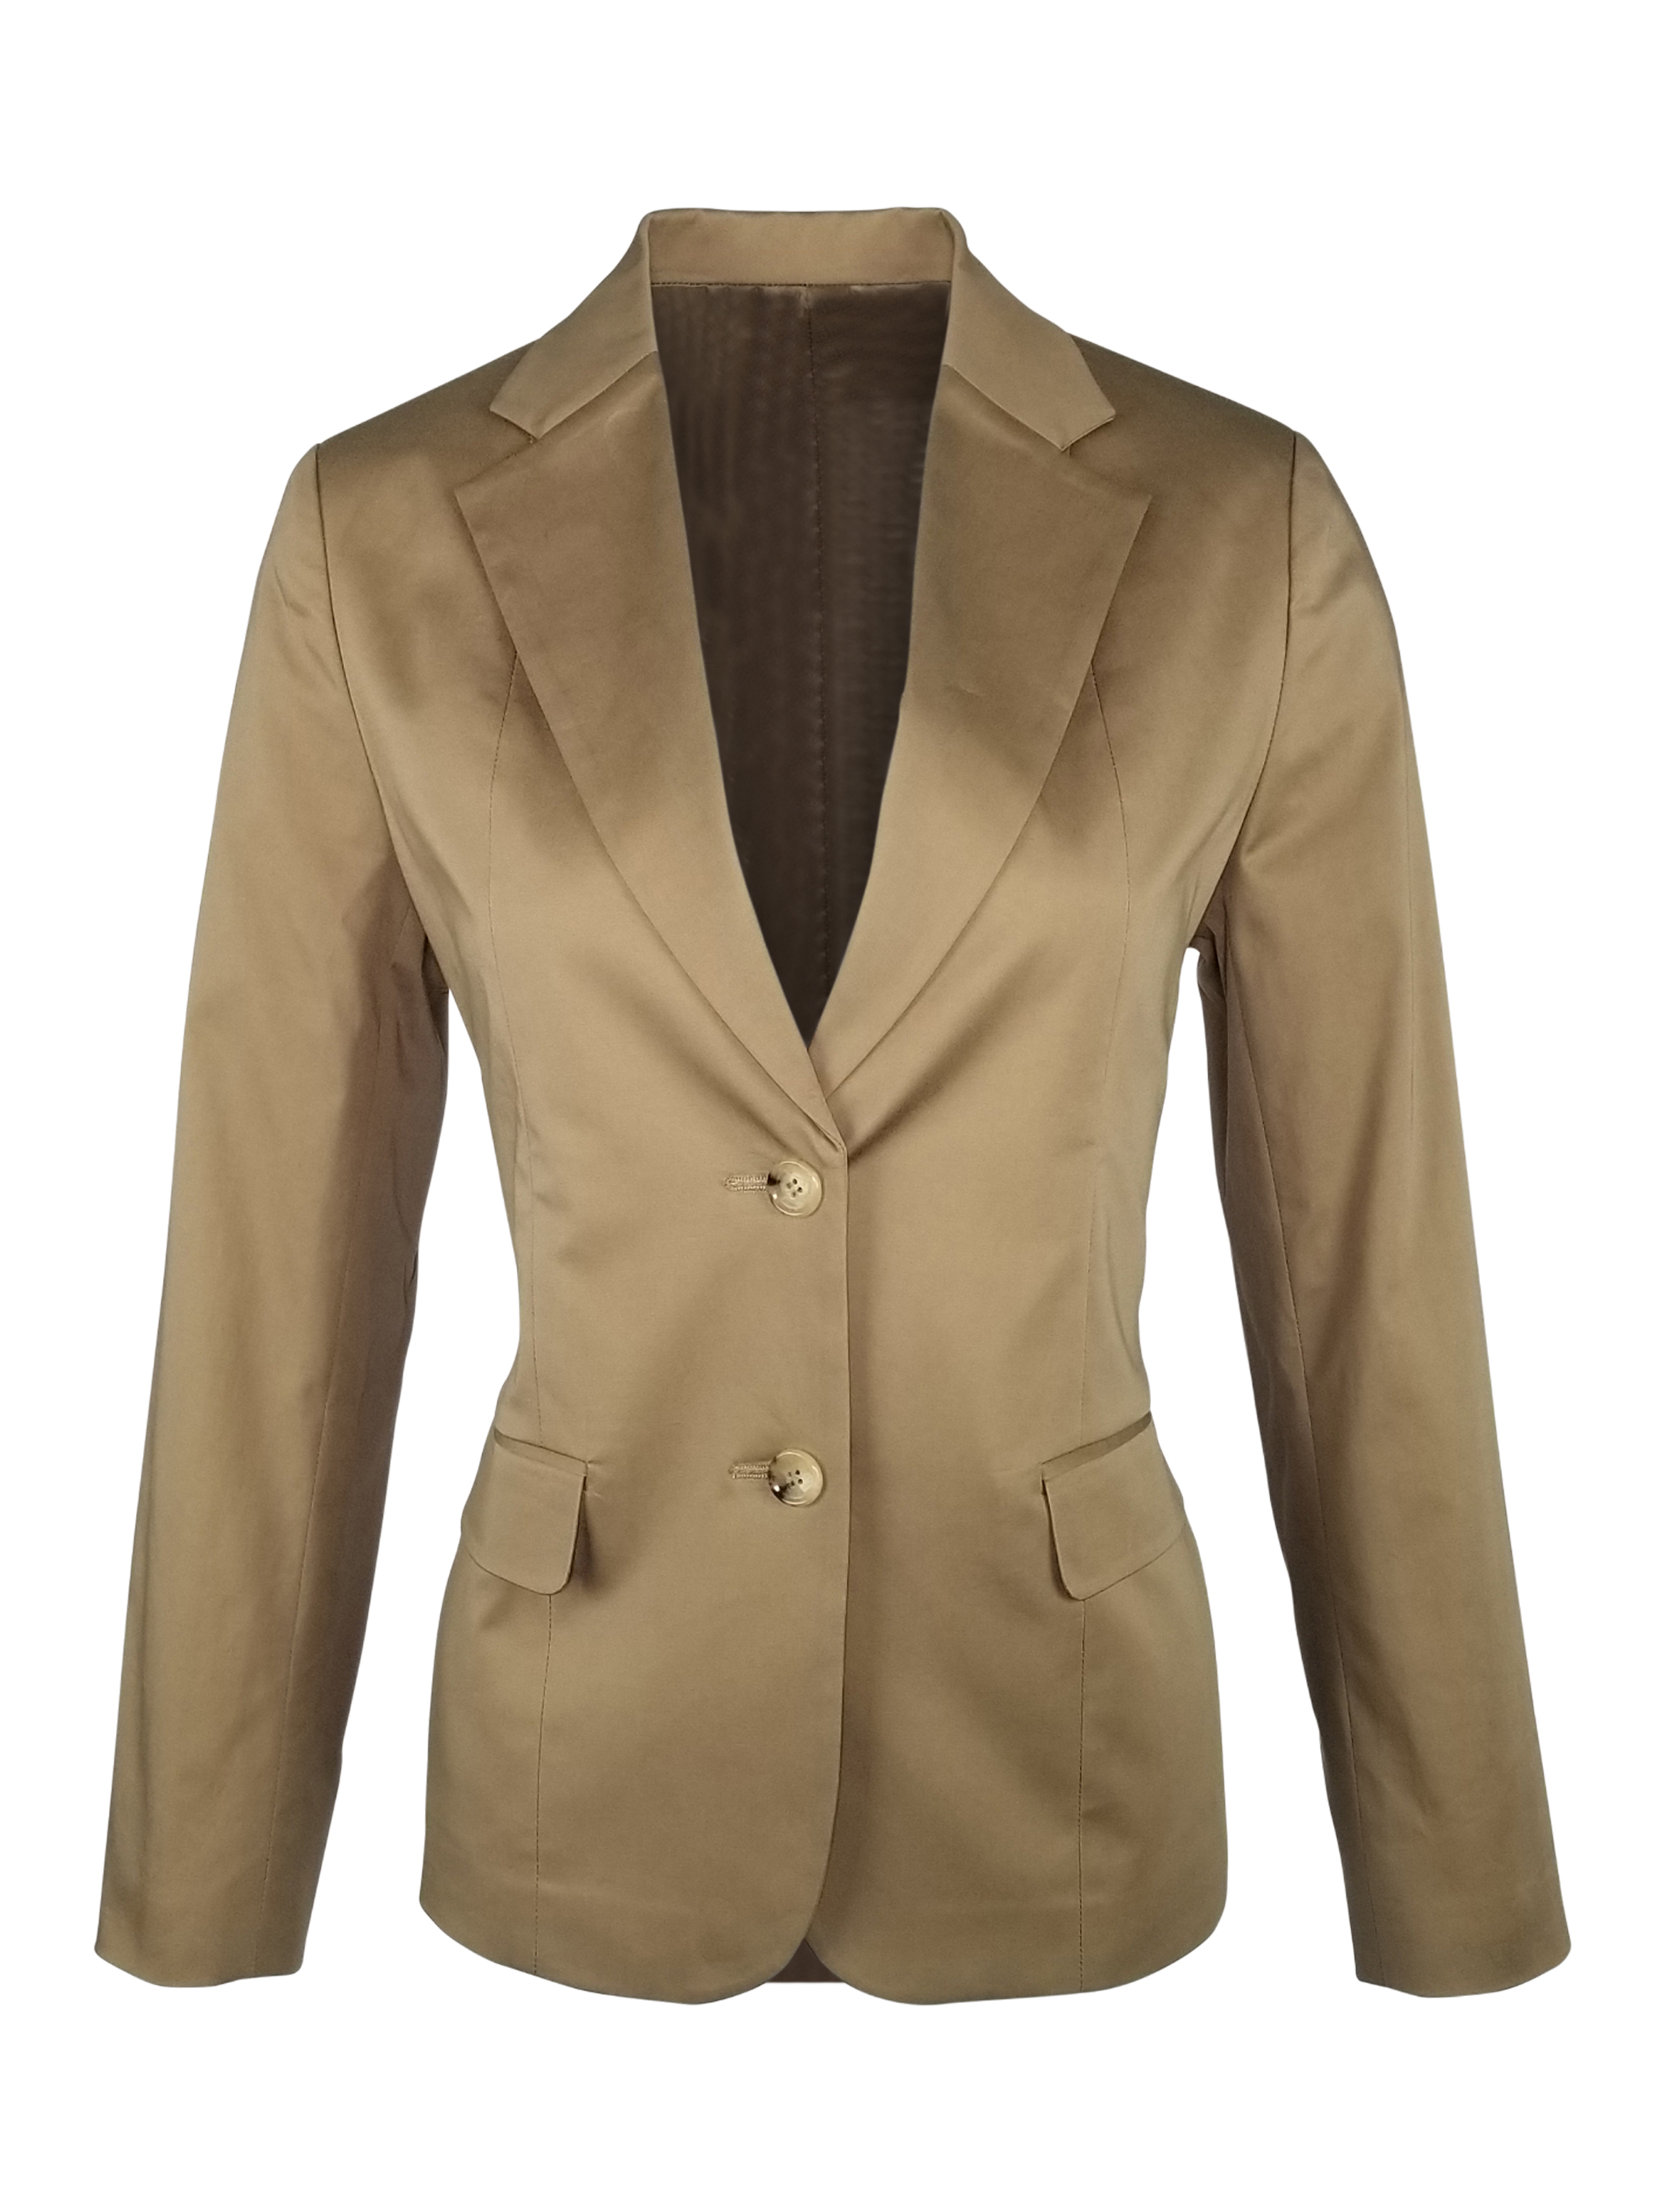 Women's Cotton Jacket - Sand - Uniform Edit